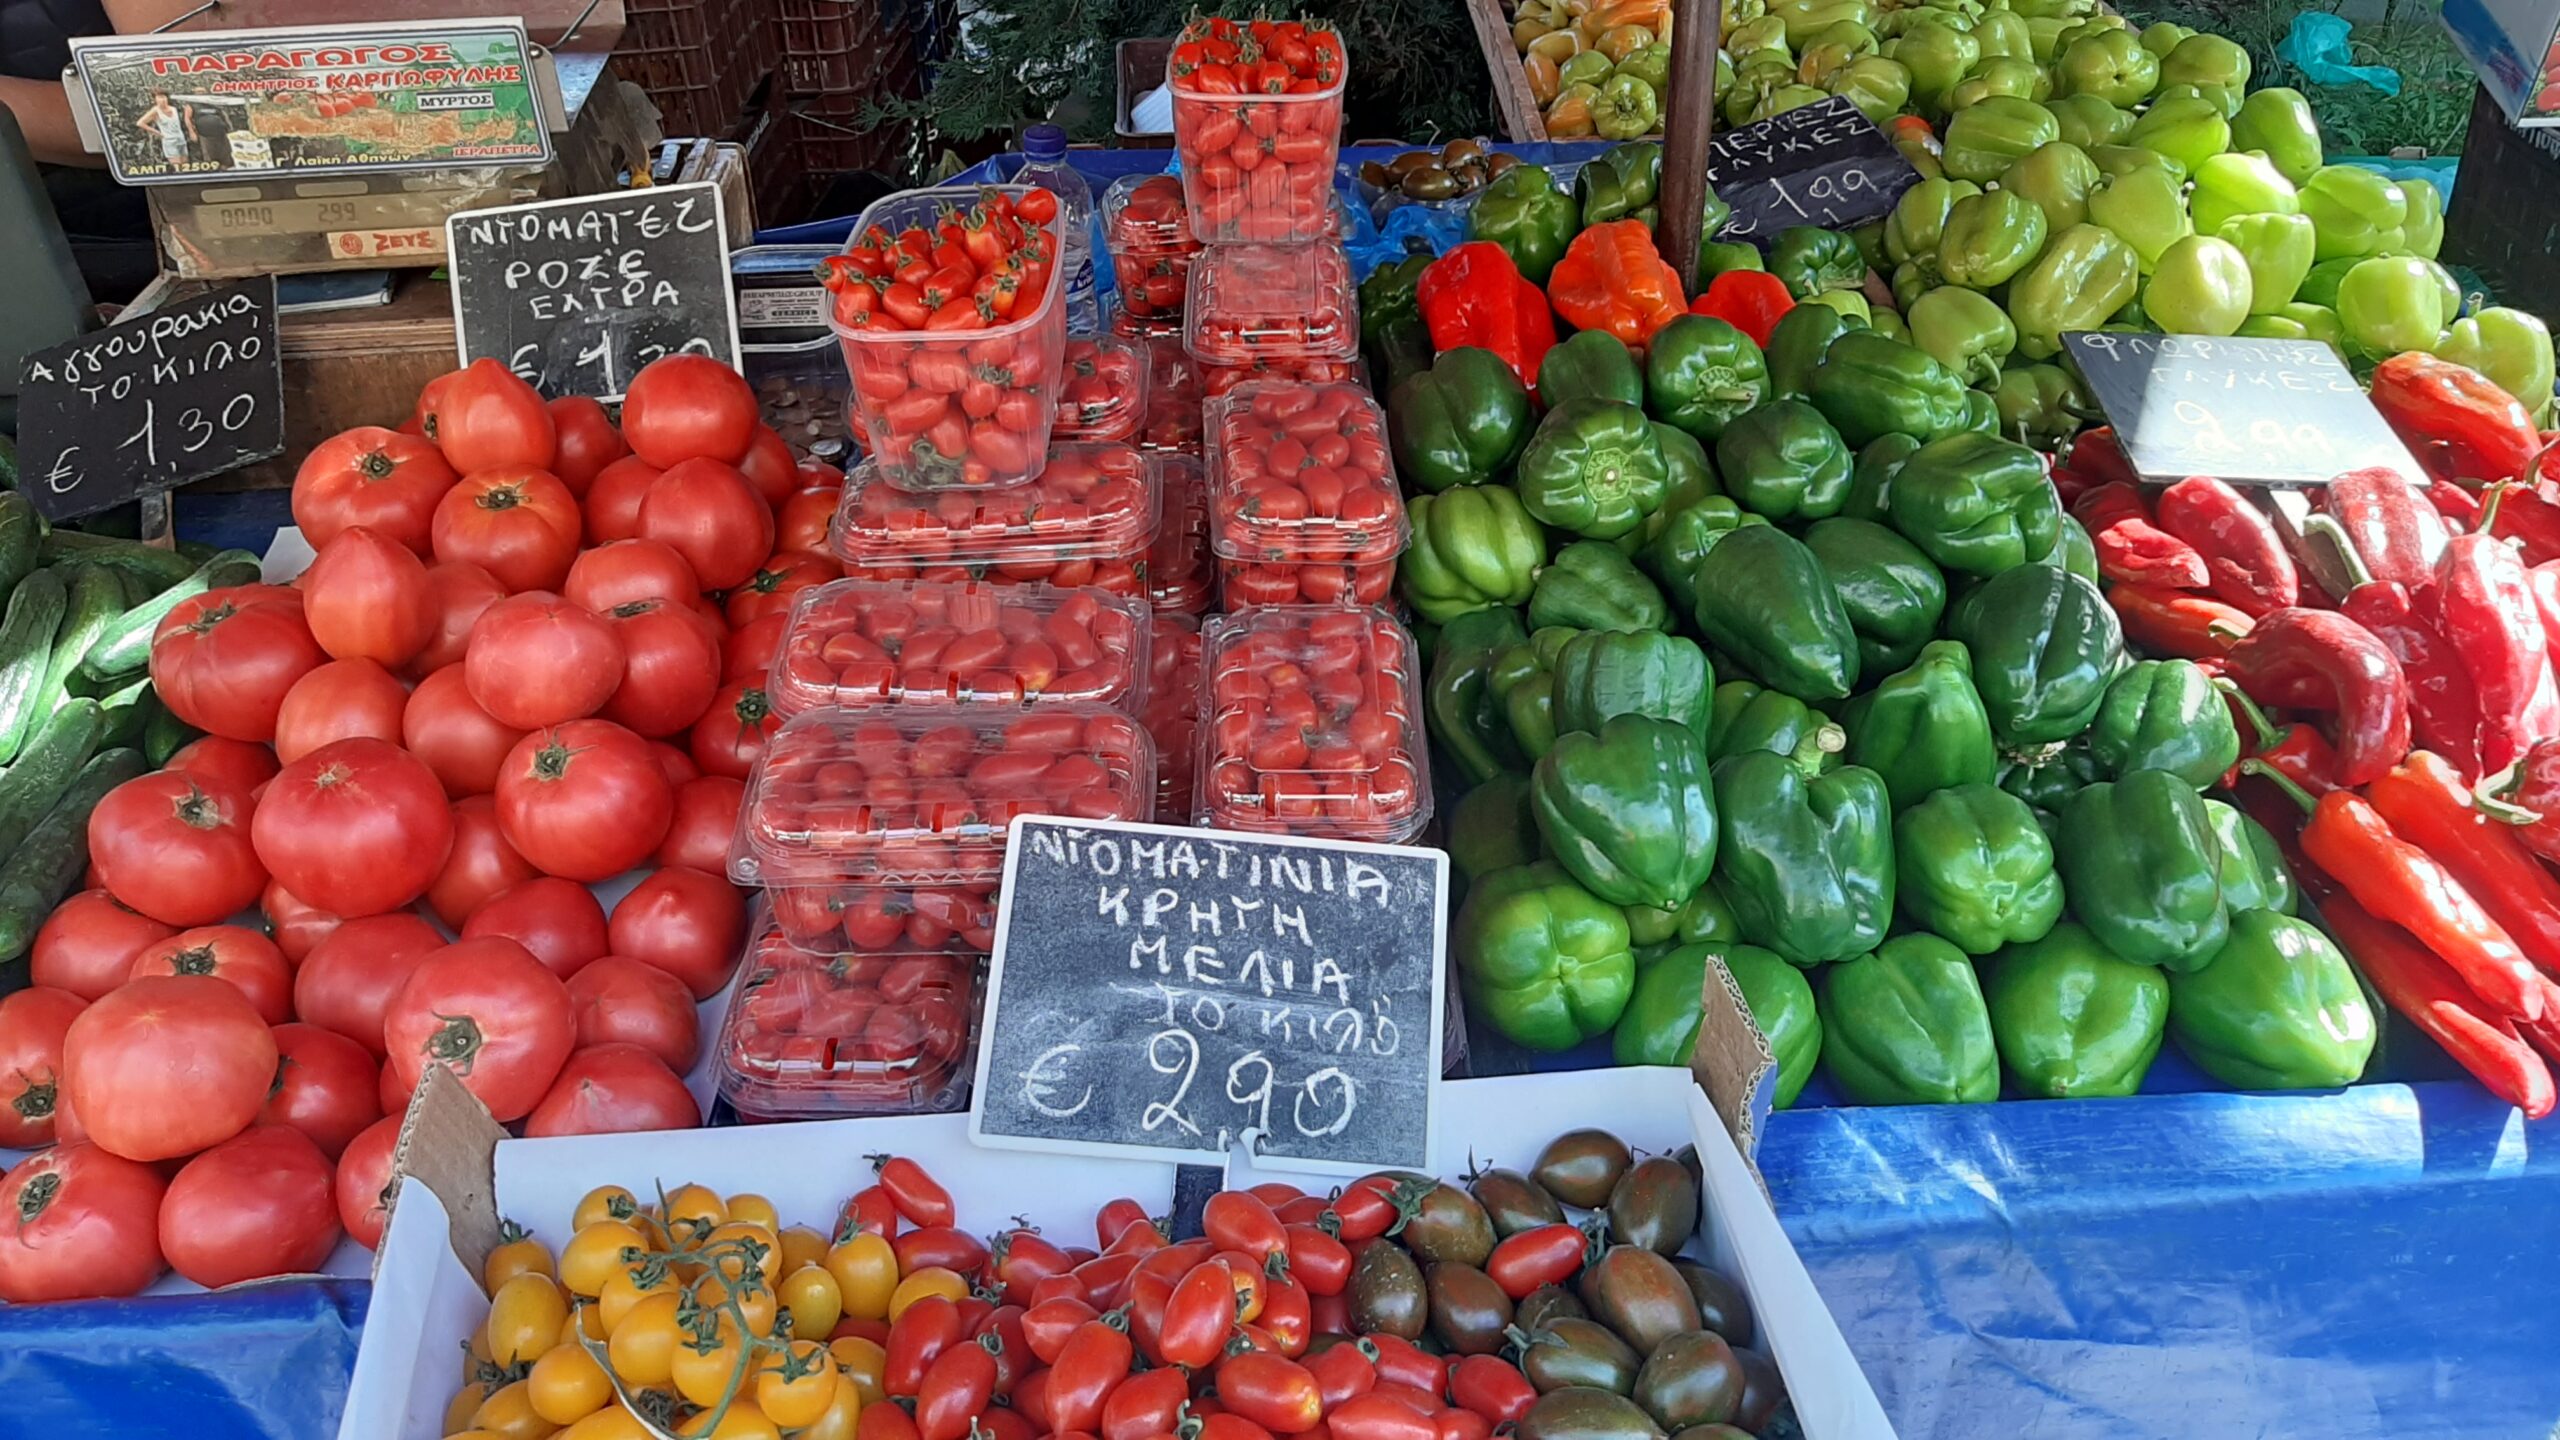 Marché d'Athènes fruits et légumes Laiki Agora marché cenrral